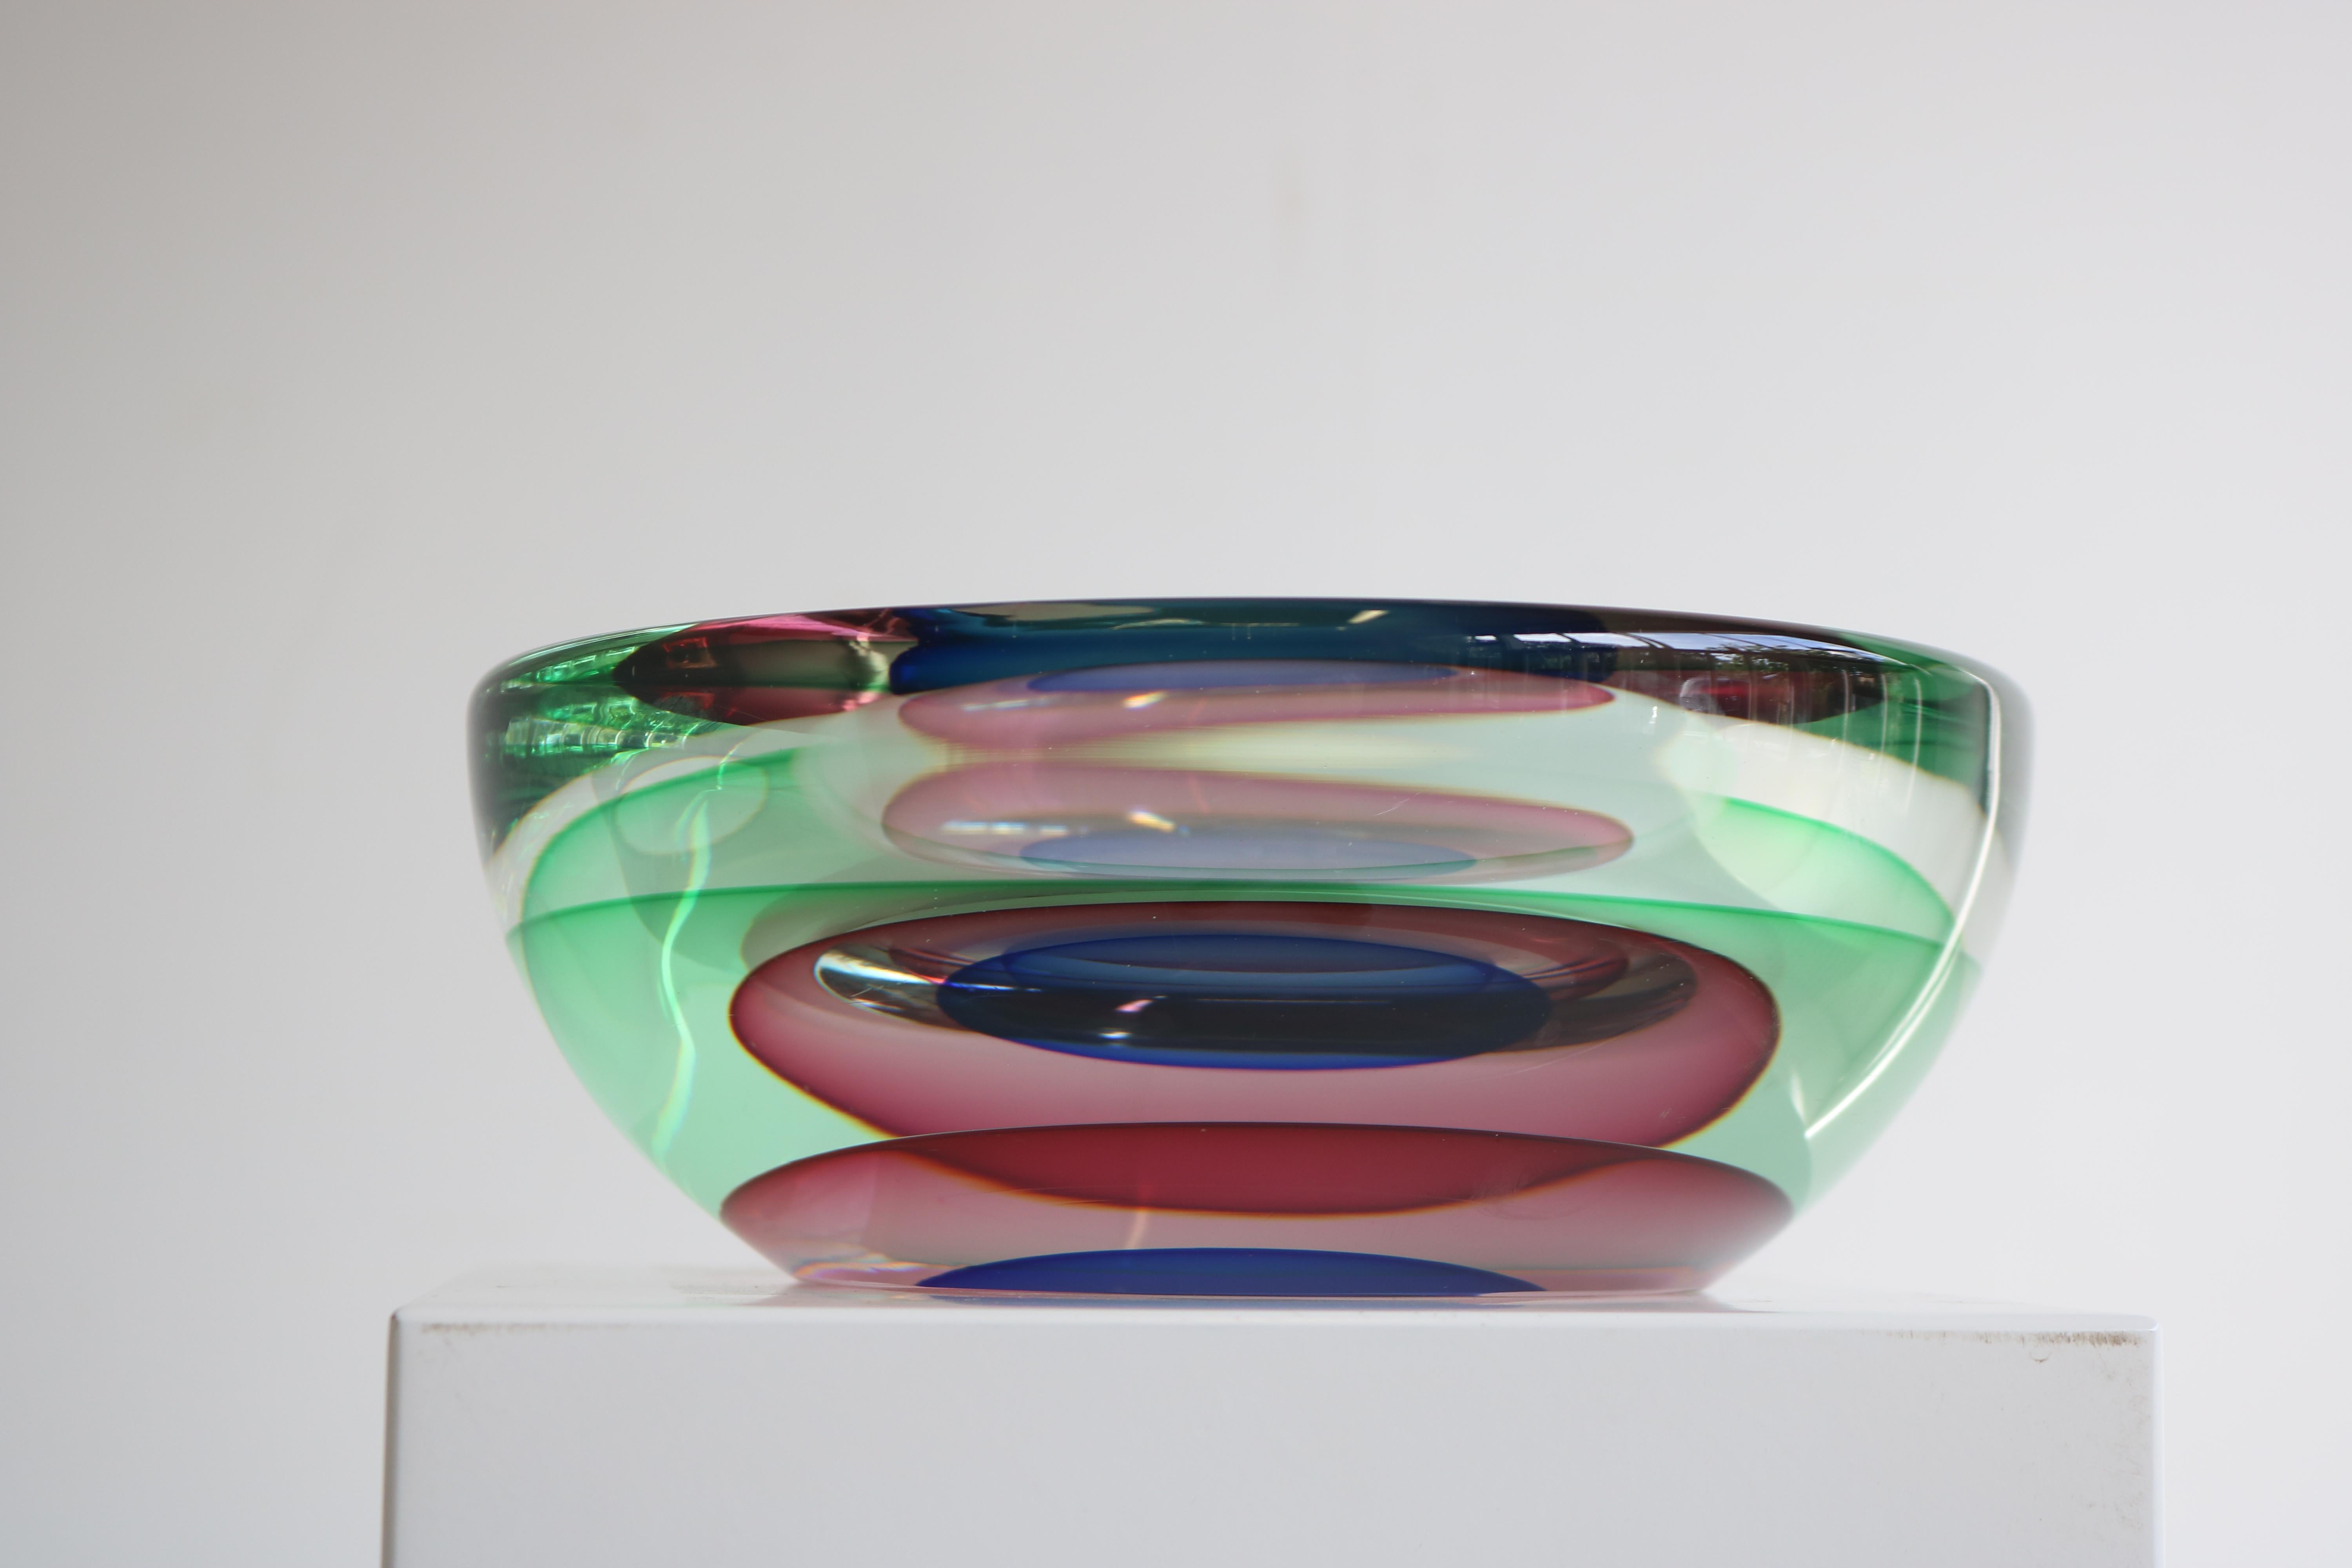 Ein atemberaubendes Kunstwerk, handgefertigt von dem legendären Künstler Luigi Onesto in der komplizierten und begehrten Sommerso-Technik! Diese atemberaubende Murano-Glasschale zeichnet sich durch eine exquisite Palette kräftiger Farben aus,